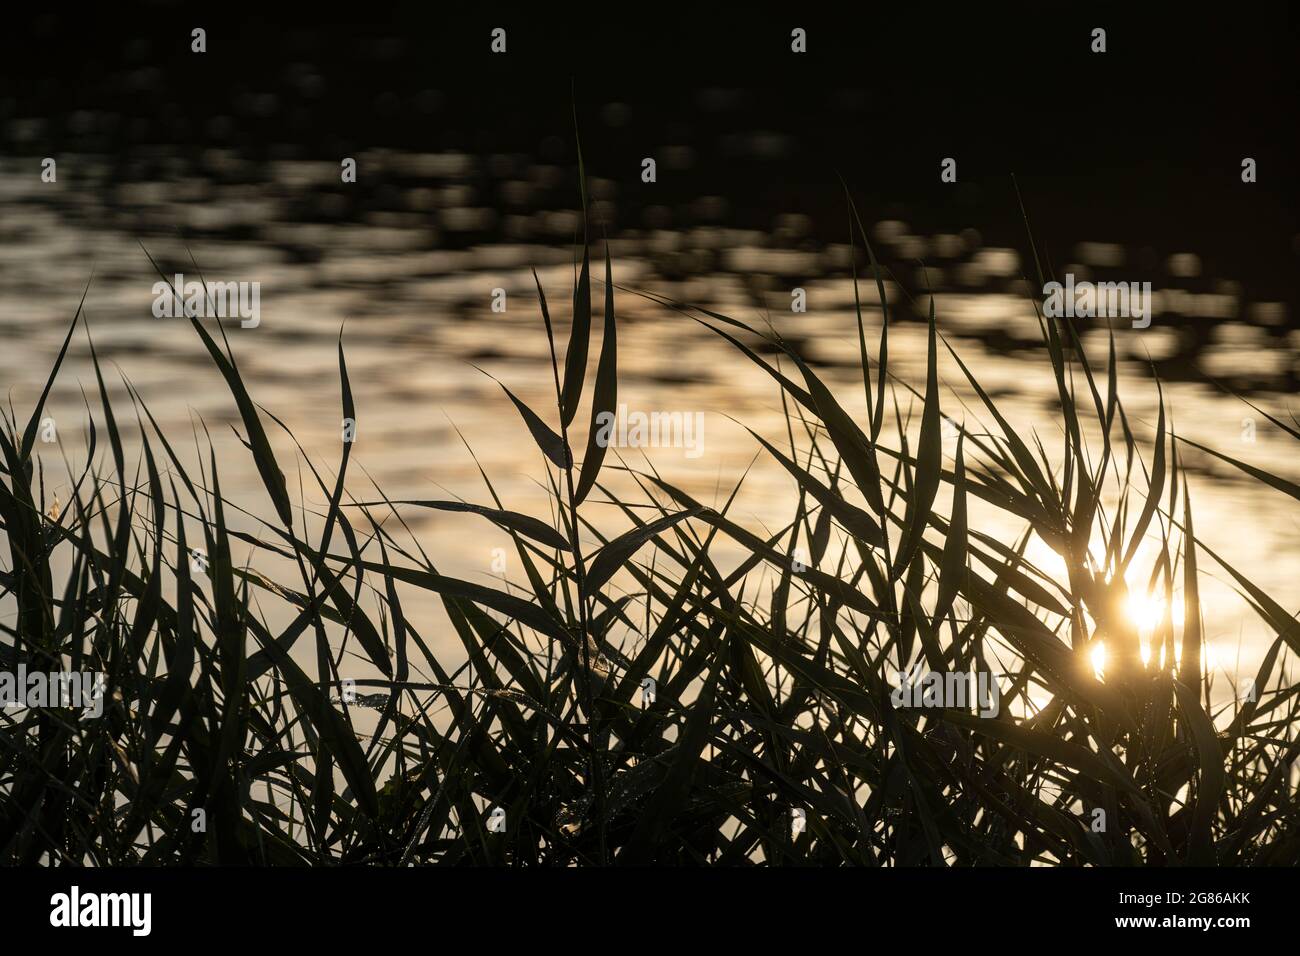 Mantoue, Italie. 13 juillet 2021. Les feuilles d'un lit de roseaux sur les rives de la rivière au coucher du soleil Banque D'Images